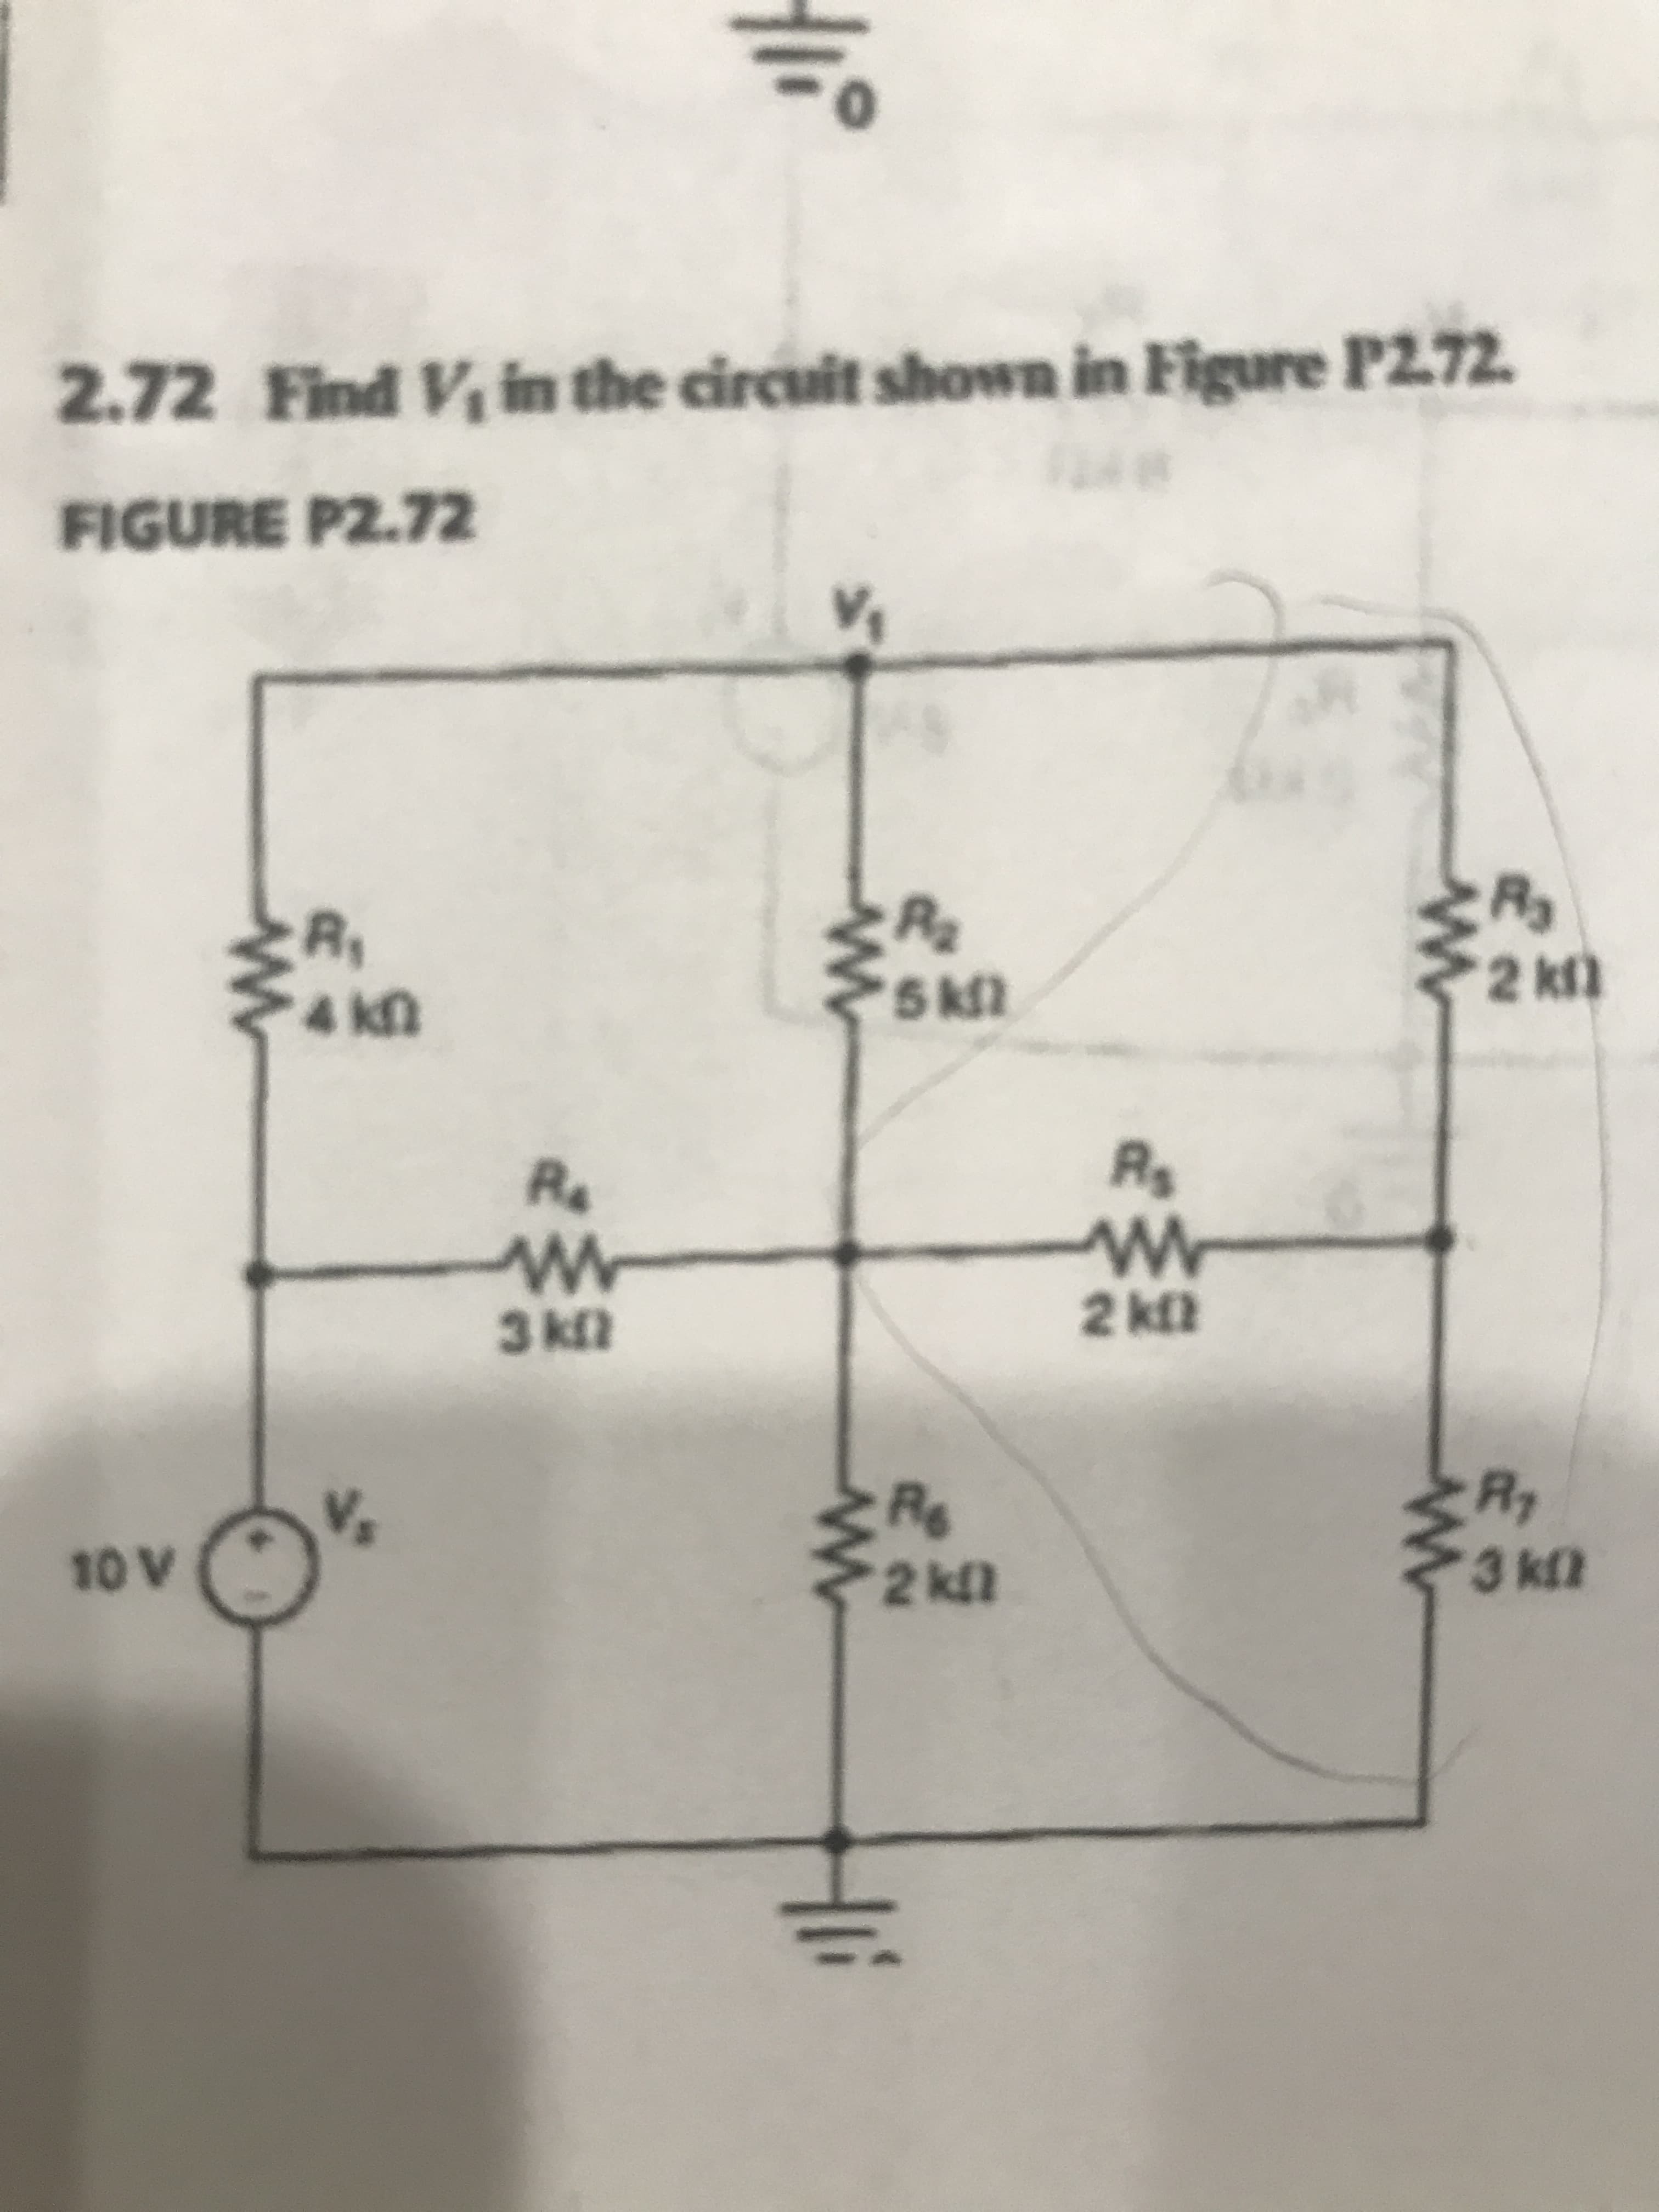 Find V in the circuit shown in Figure P272.
2.72
FIGURE P2.72
R,
4 kn
2 kl)
R.
Re
2 kfl
3 k2
R.
Rg
2 kll
Vs
3 kl2
10 V
